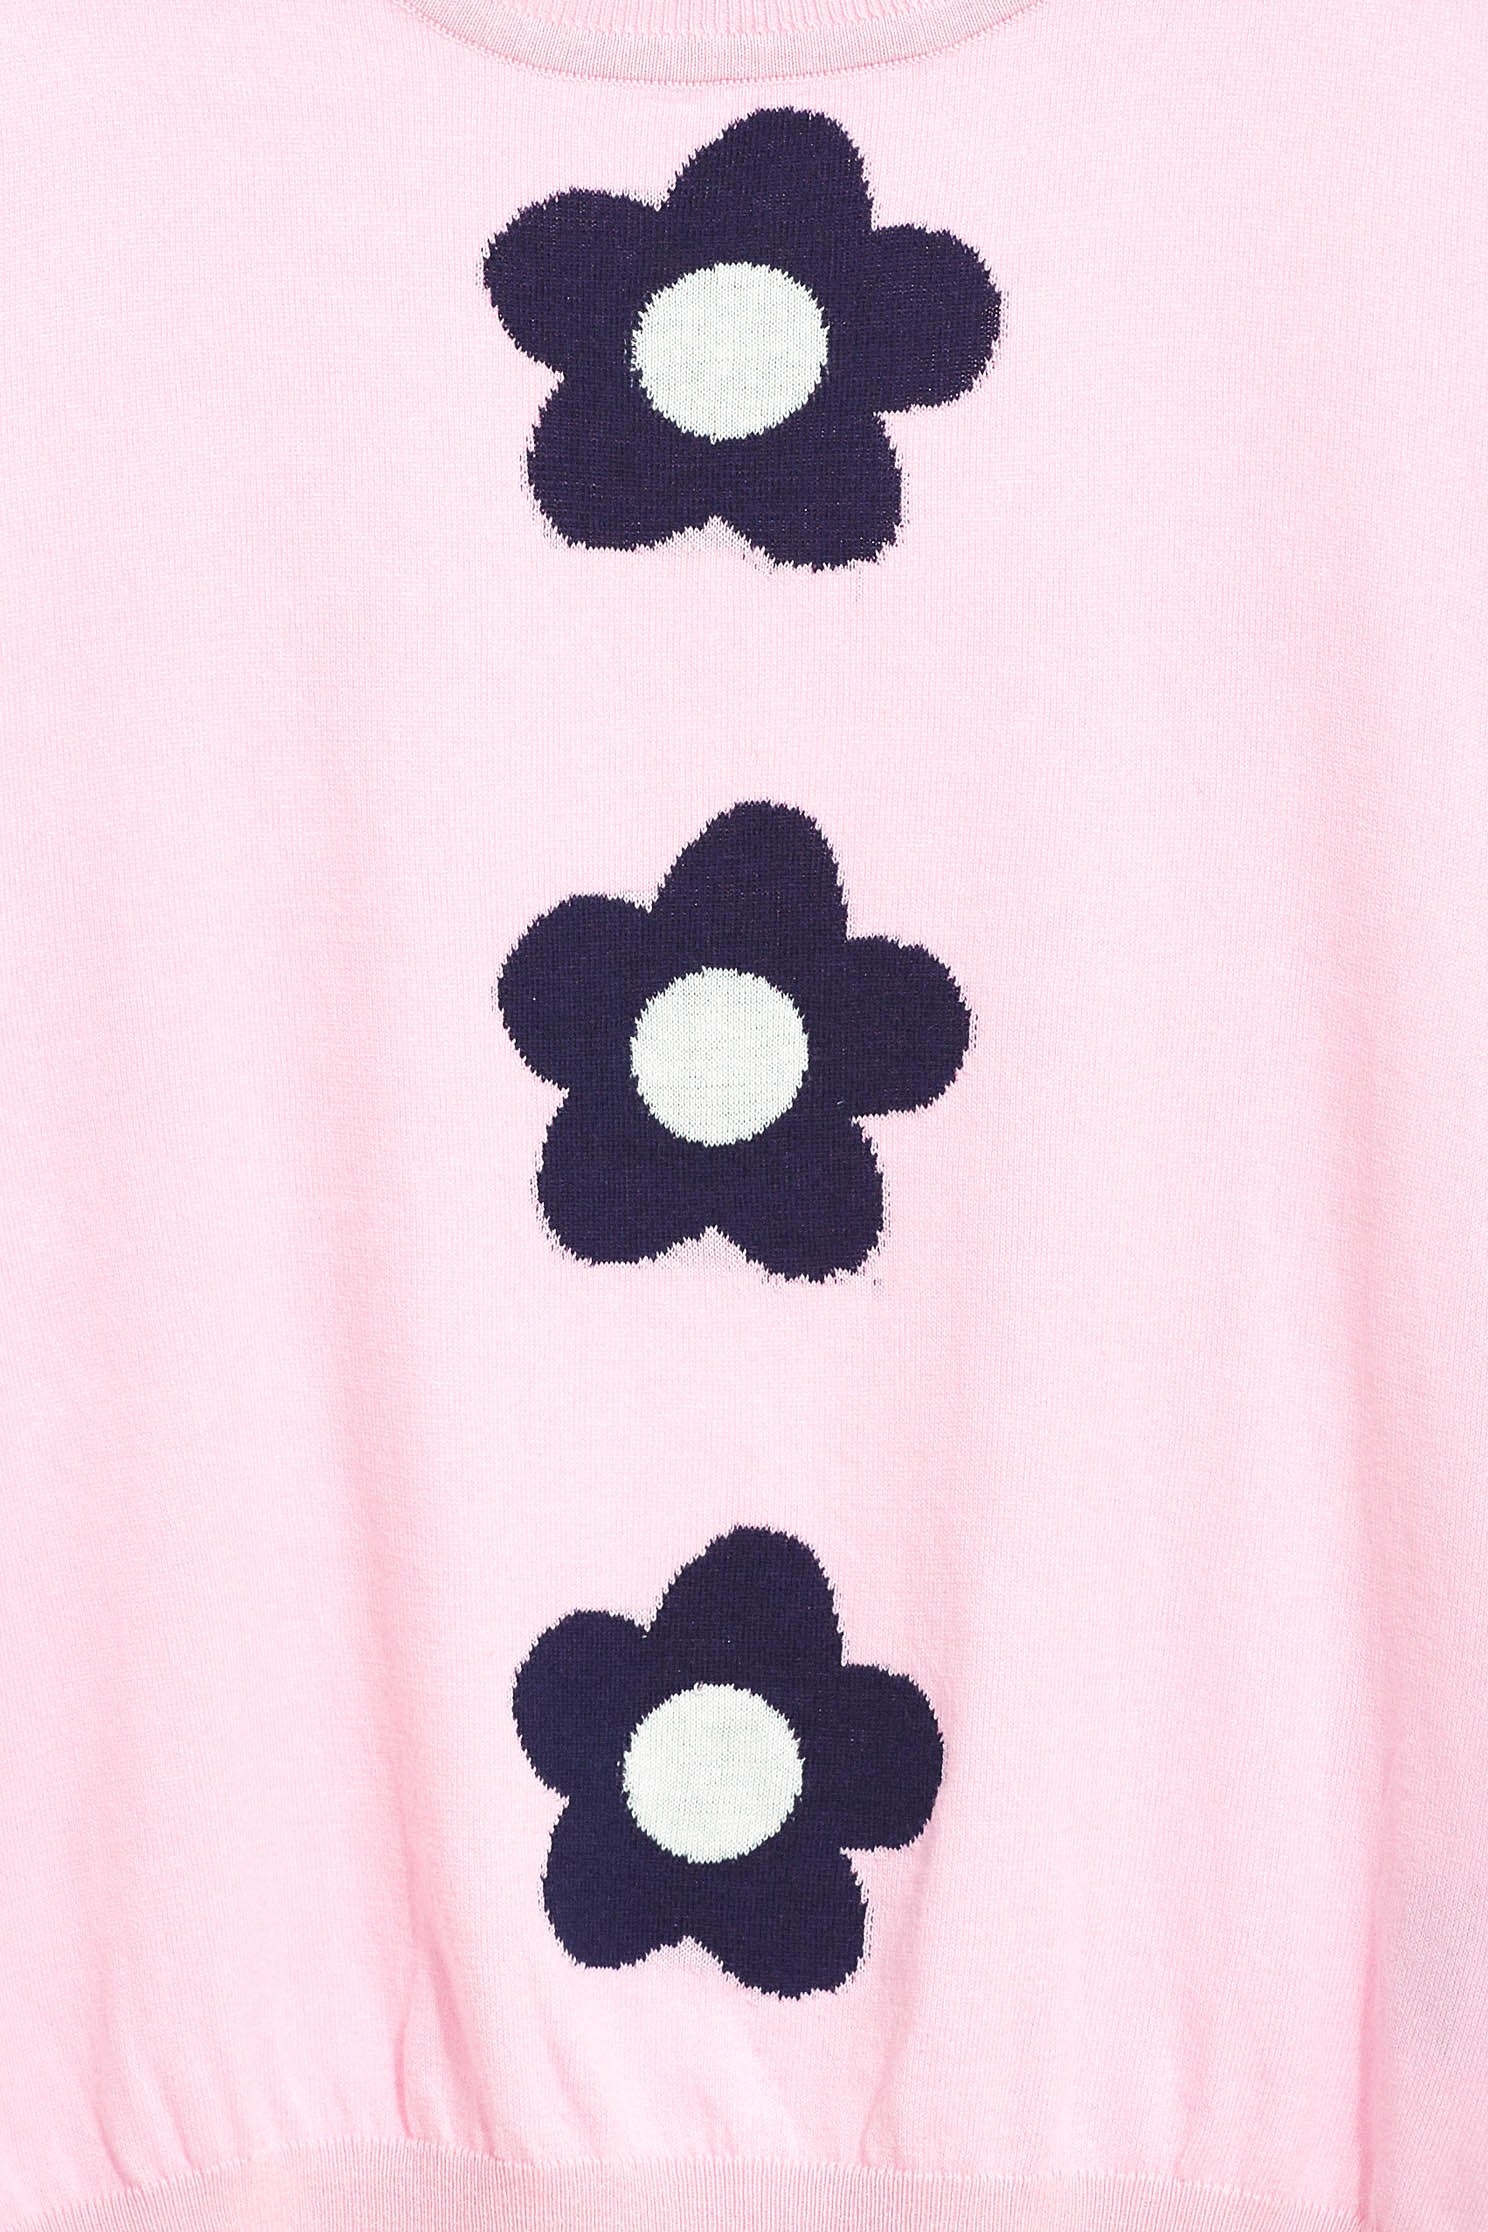 粉色合身花朵女人針織五分袖上衣粉色合身花朵女人針織五分袖上衣,上衣,五分袖上衣,春夏穿搭,短袖上衣,純棉,針織,針織上衣,針織衫